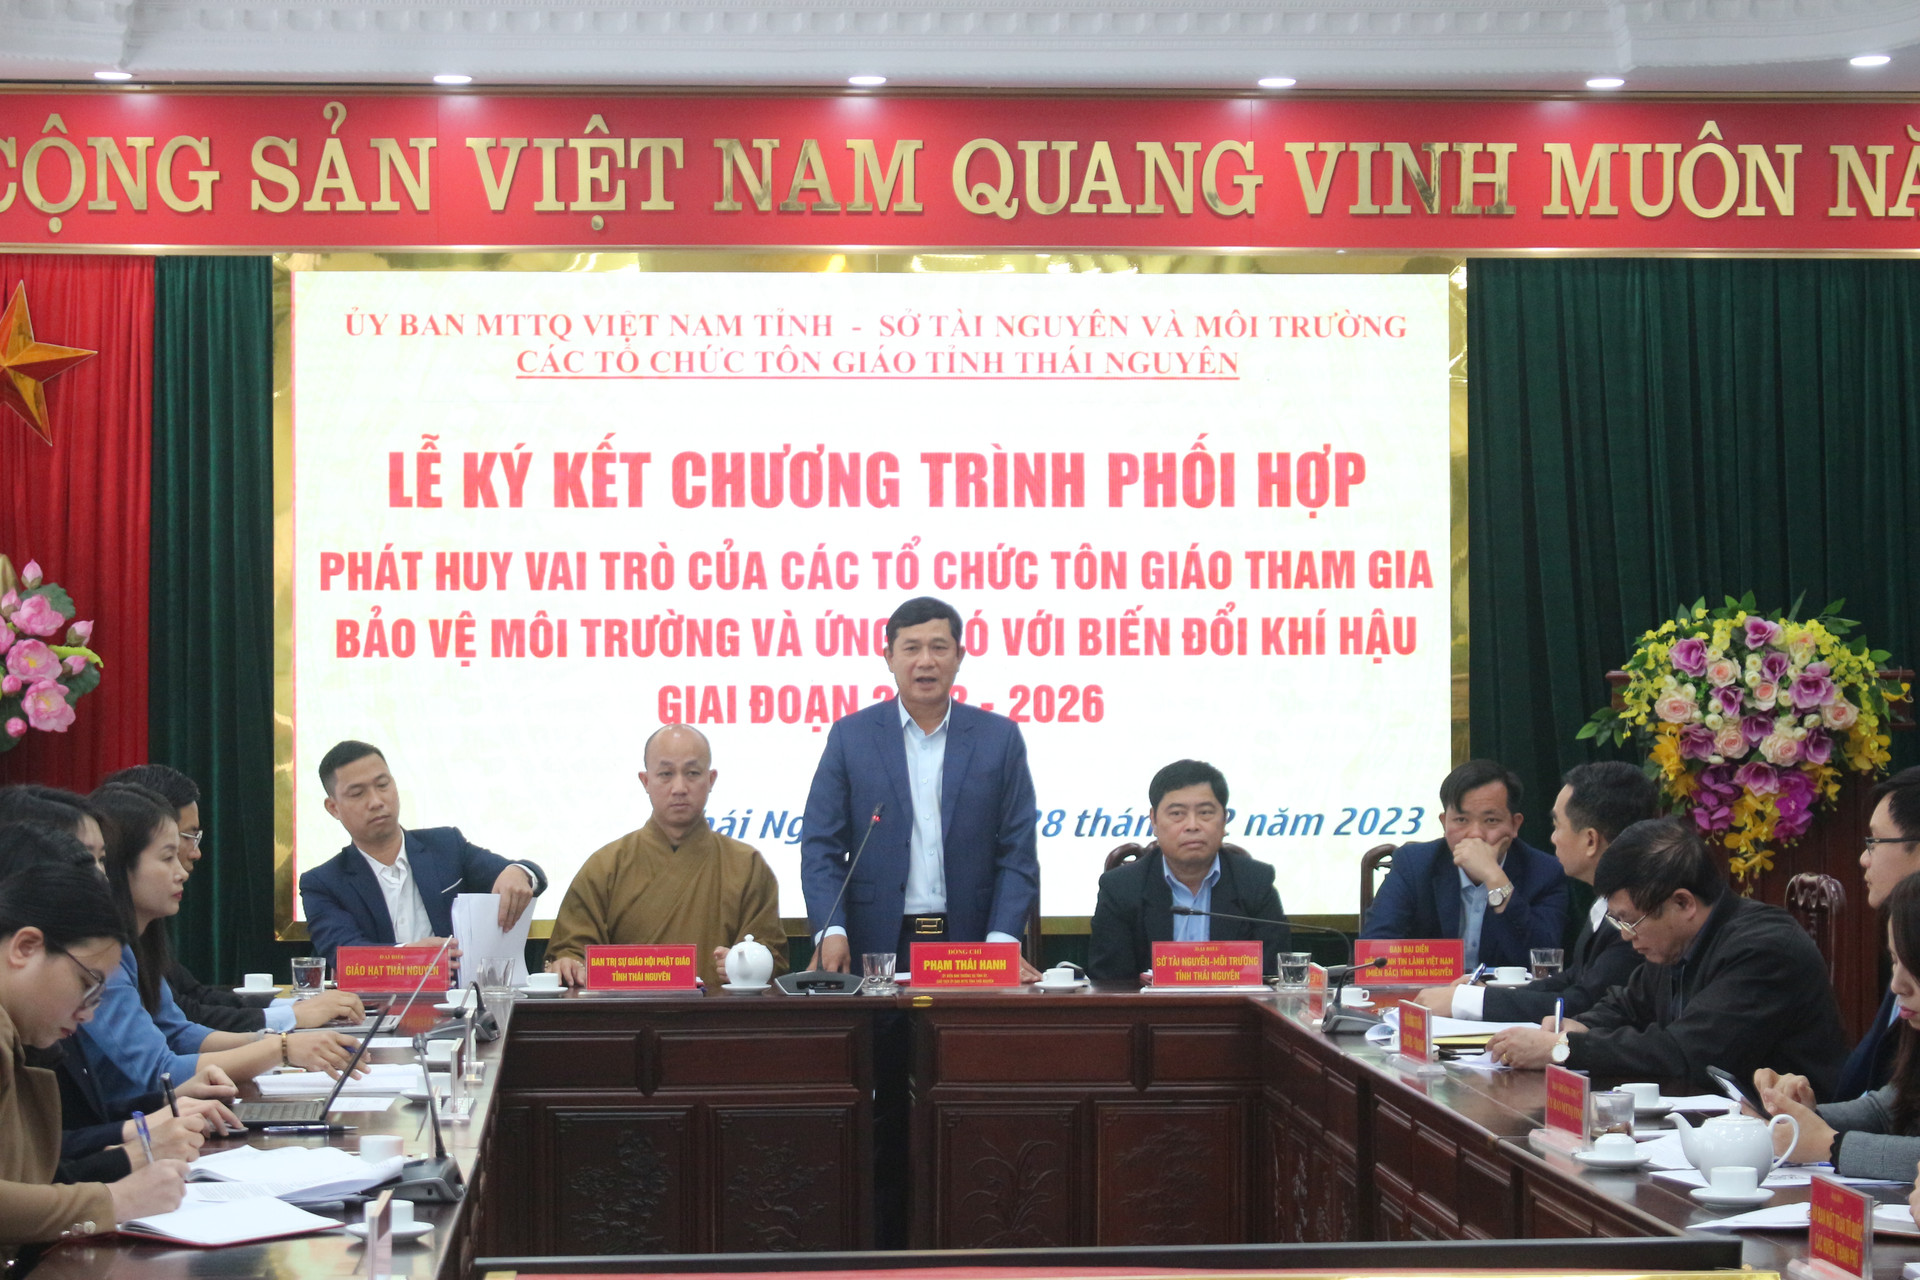 Ông Phạm Thái Hanh, Chủ tịch Ủy ban MTTQ tỉnh Thái Nguyên phát biểu tại hội nghị.